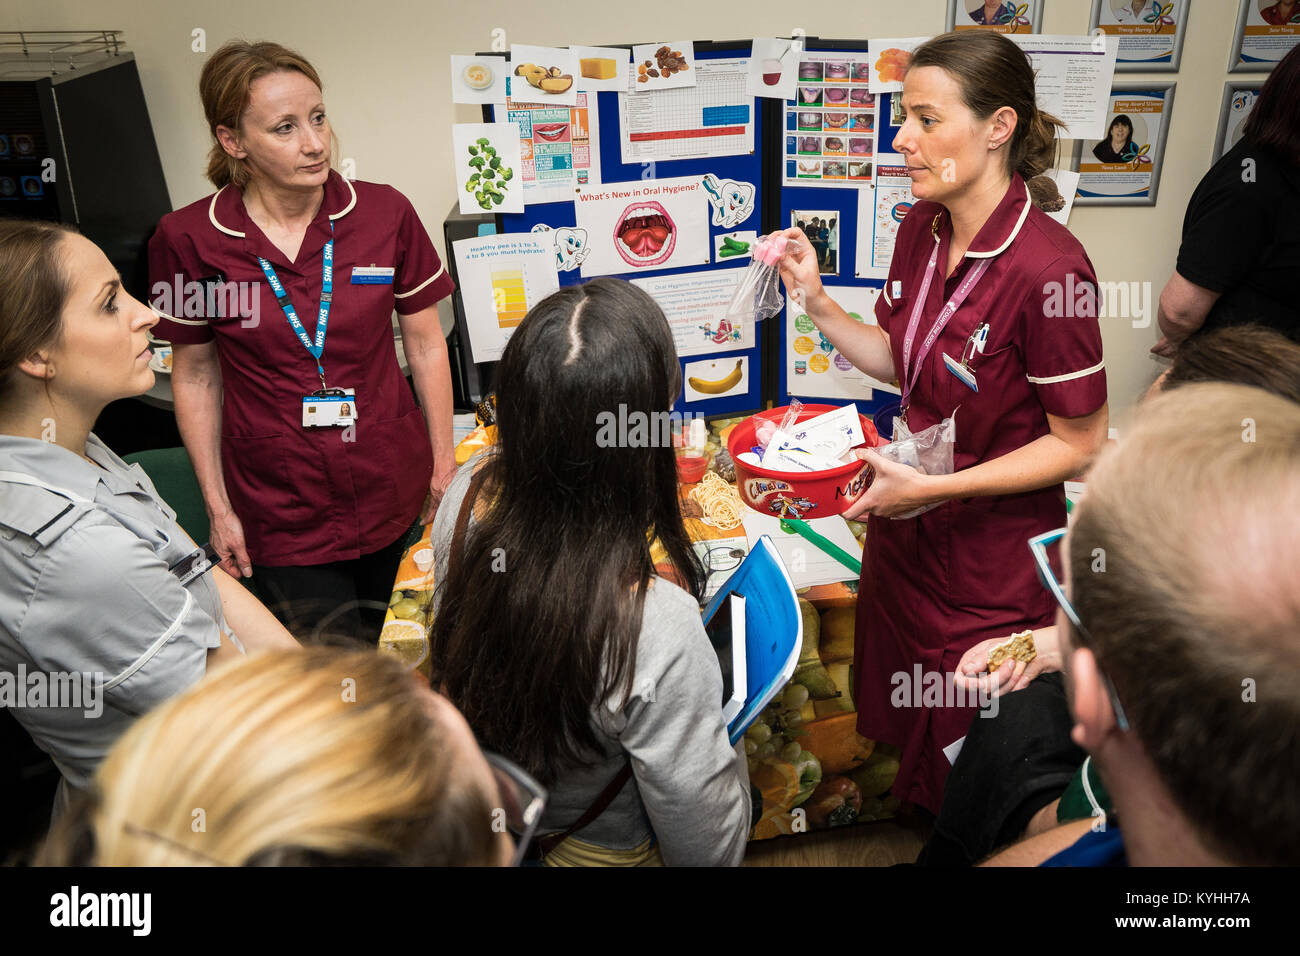 Die Princess Alexandra Hospital, Harlow, Krankenpflege und Geburtshilfe Feier Tag - Schulung und Information, UK. Mundhygiene Informationen Stockfoto